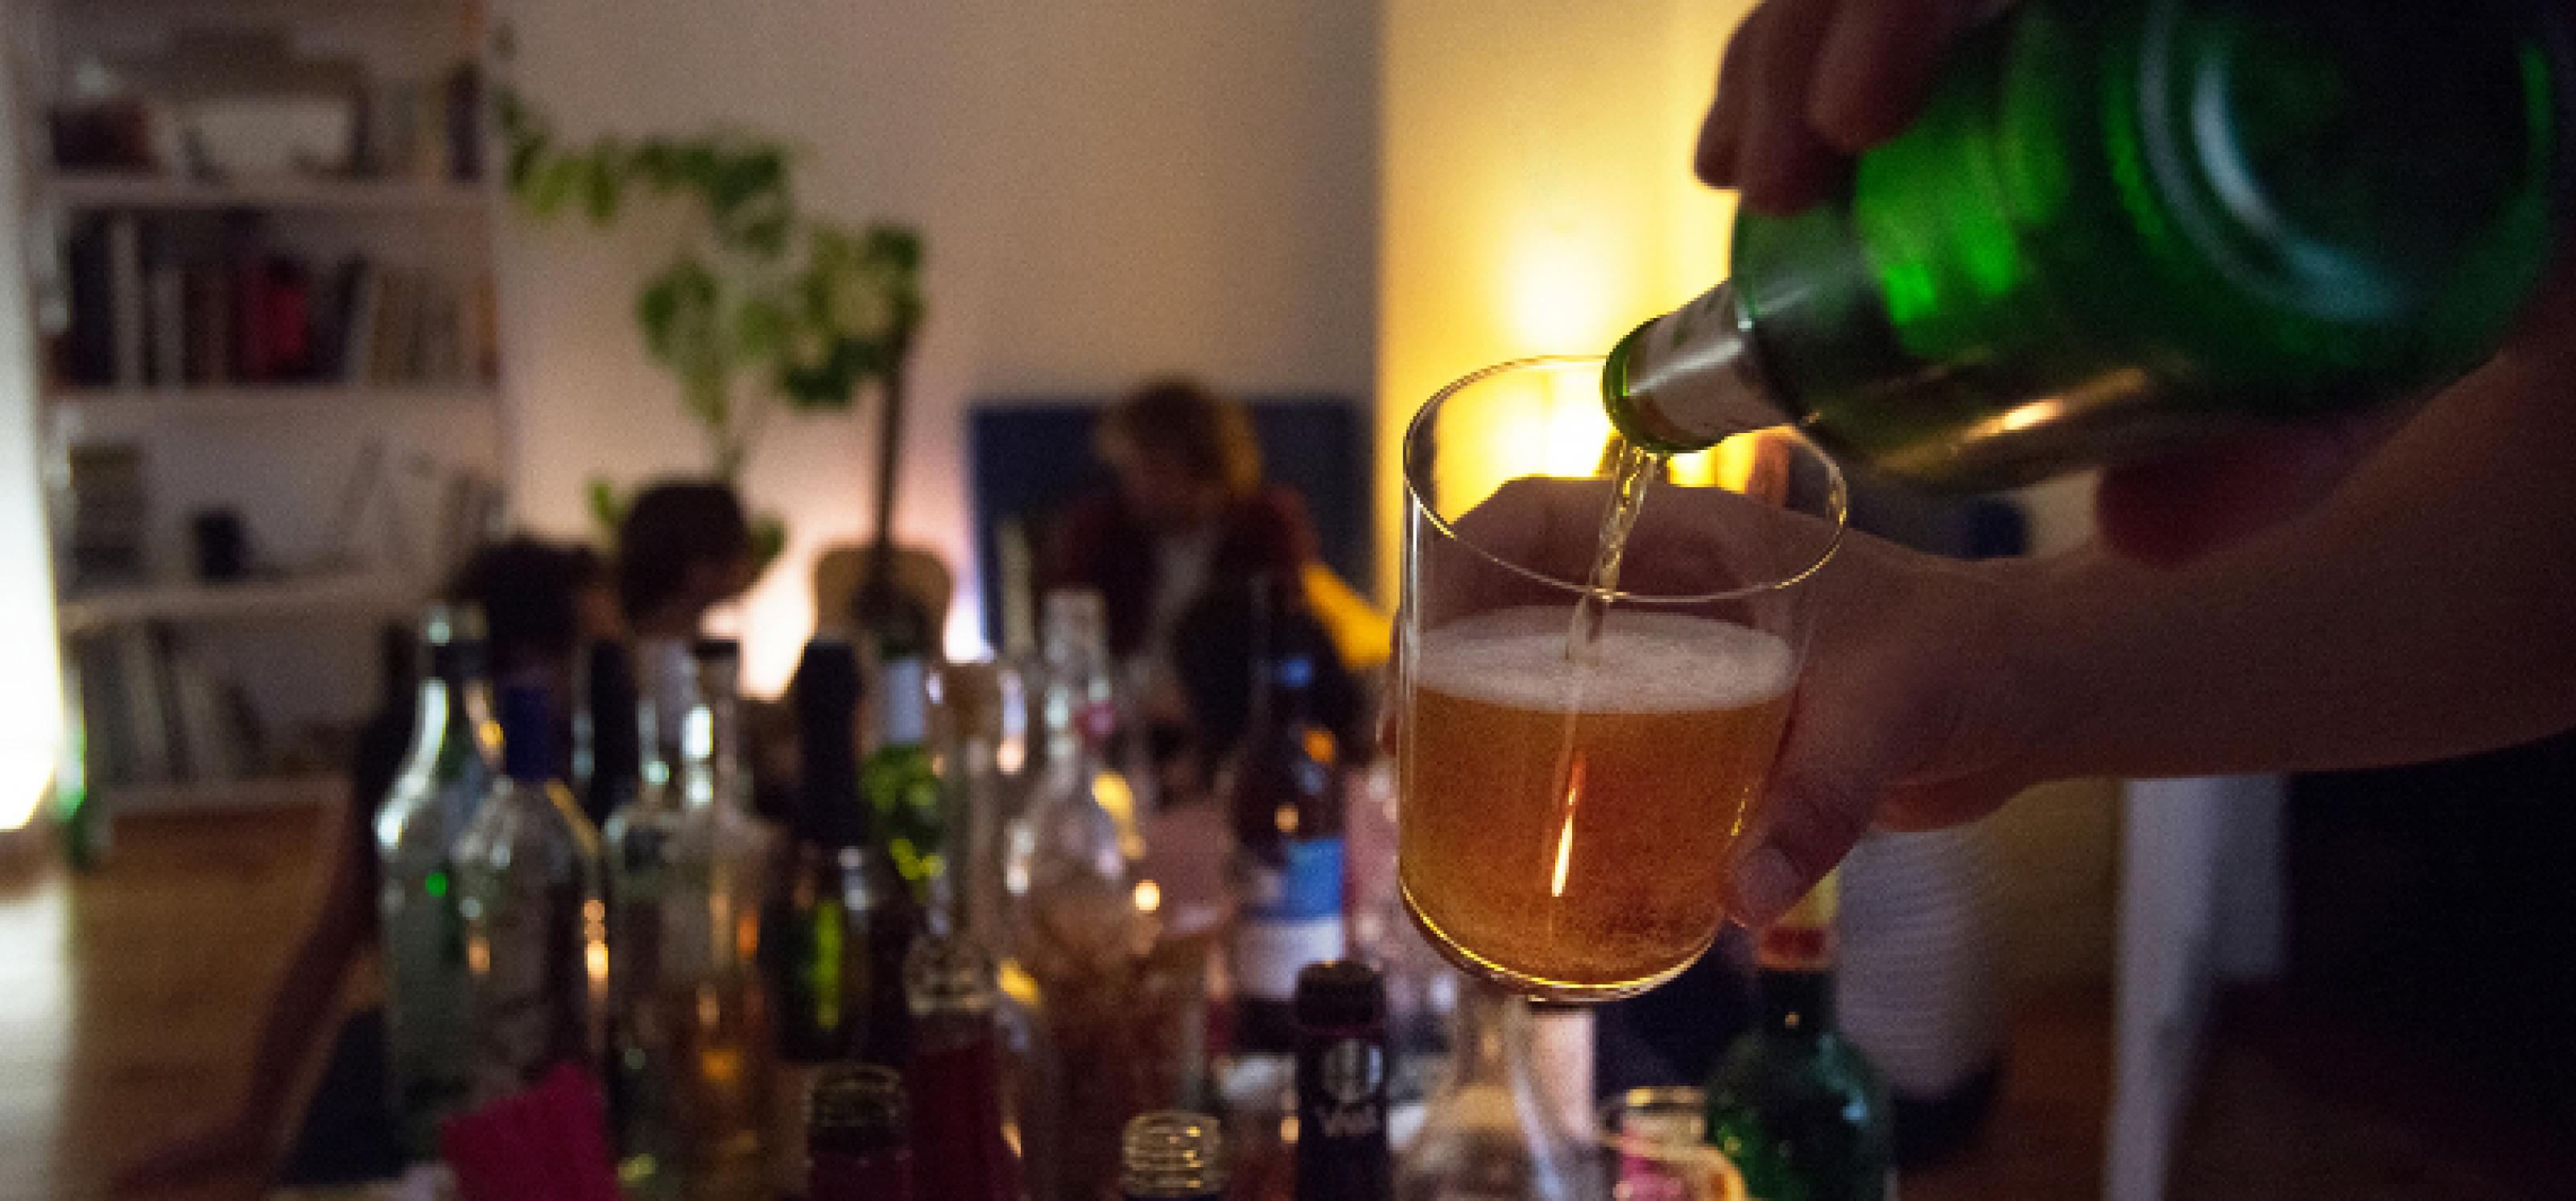 Eine Partyszene im Dämmerlicht, auf einem Tisch stehen verschiedene Gläser und Flaschen mit Alkohol